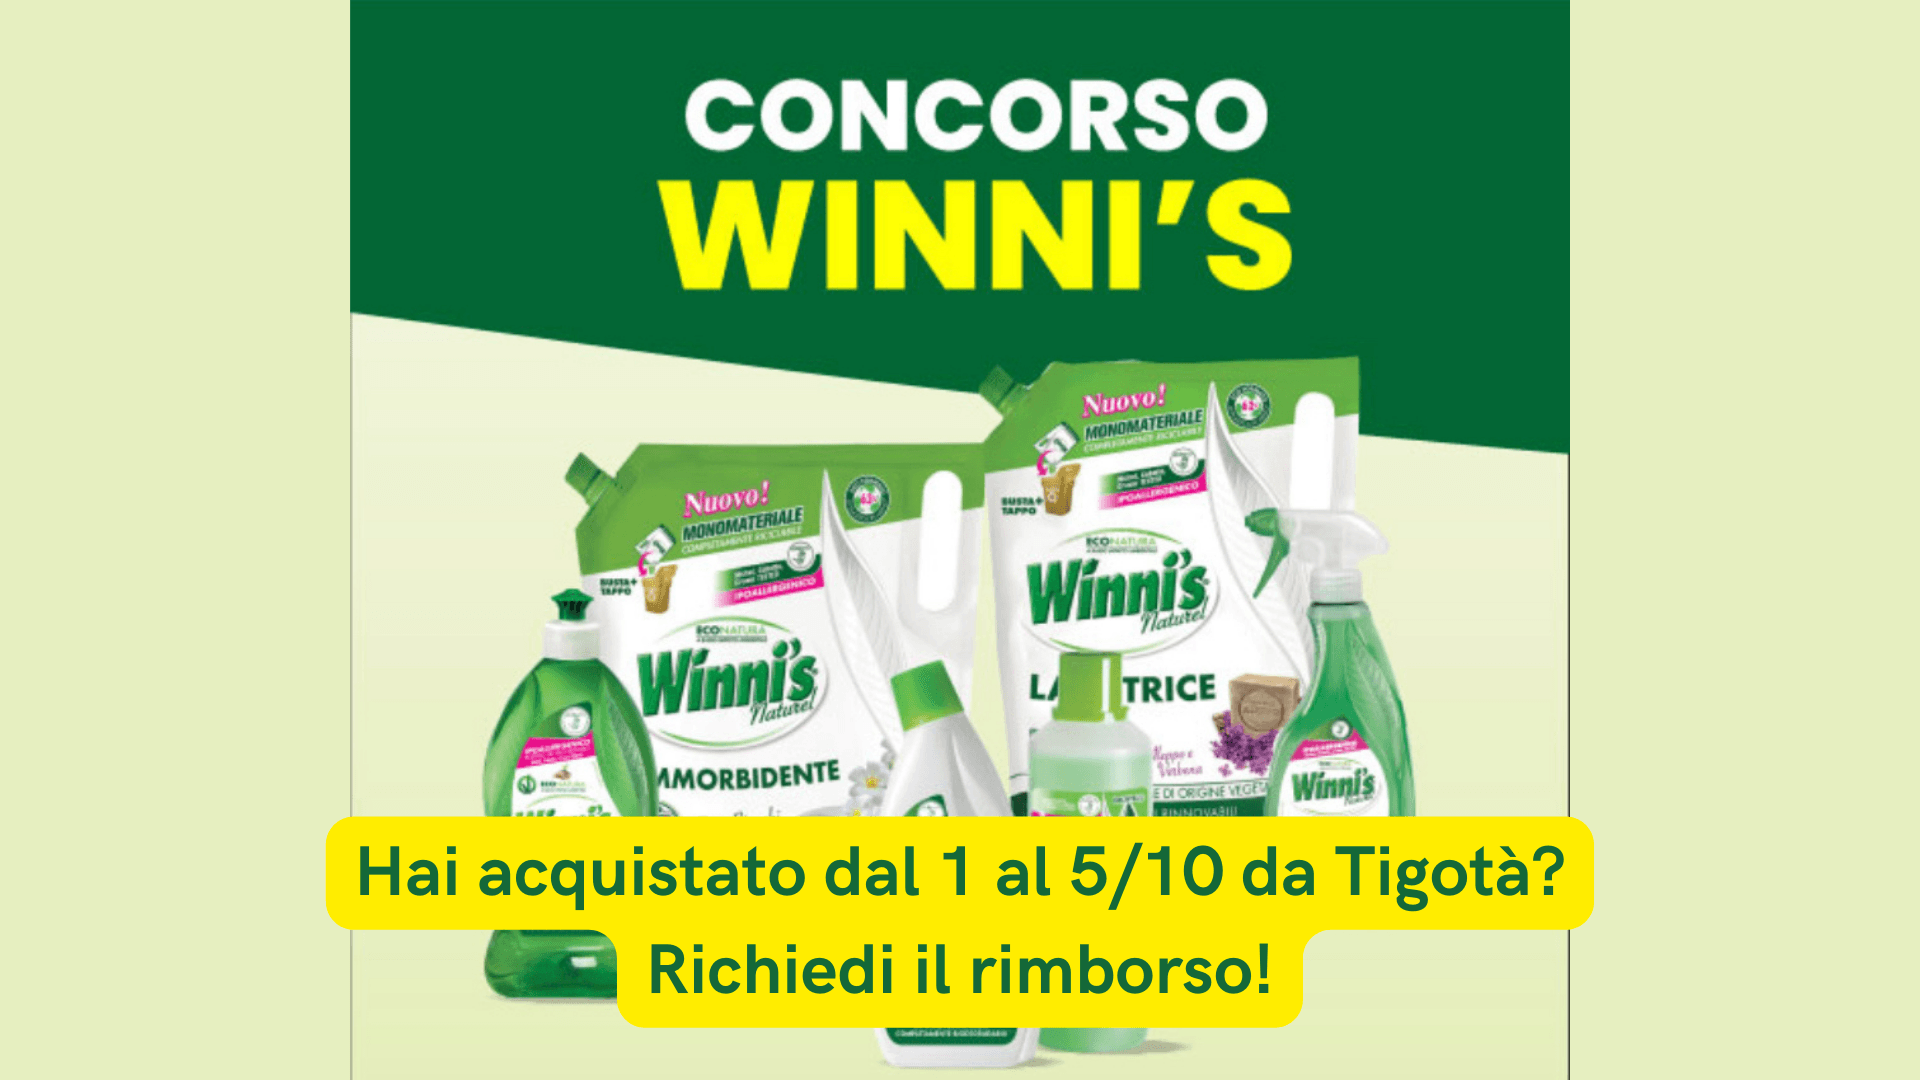 Hai acquistato Winni’s da Tigotà prima del 6 ottobre? Riceverai un buono! 1